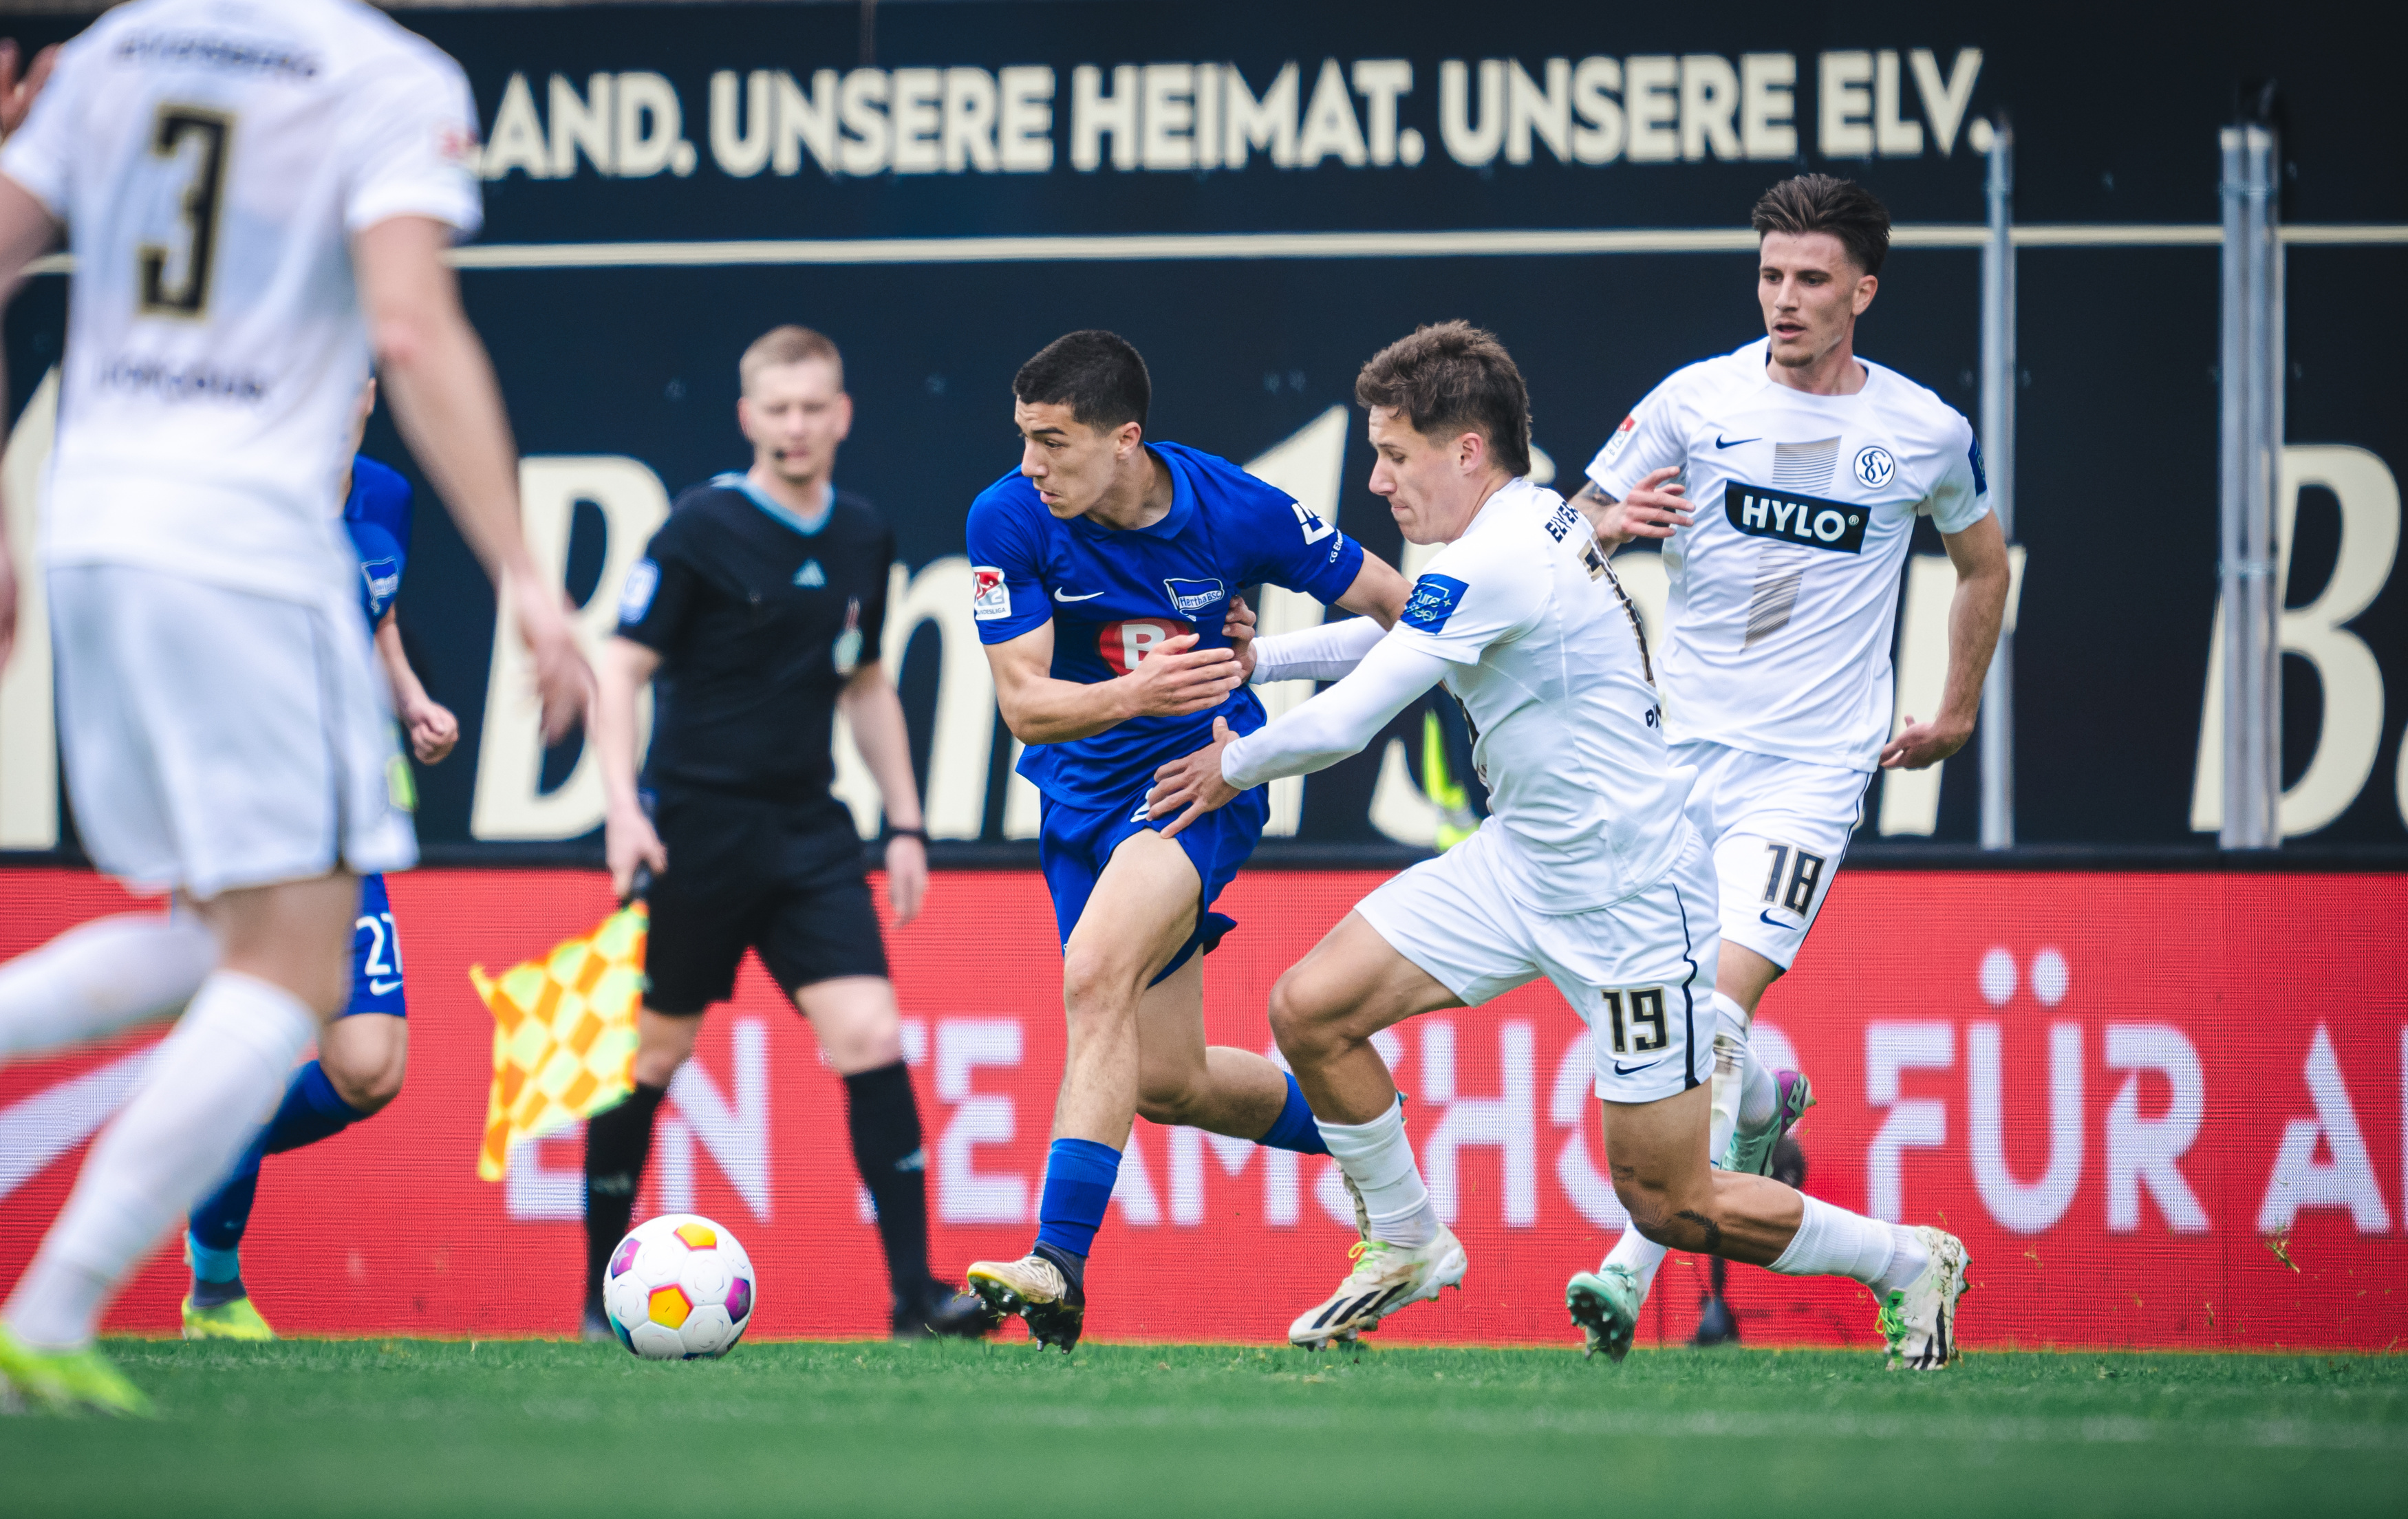 2:4 in Elversberg |  Hertha BSC